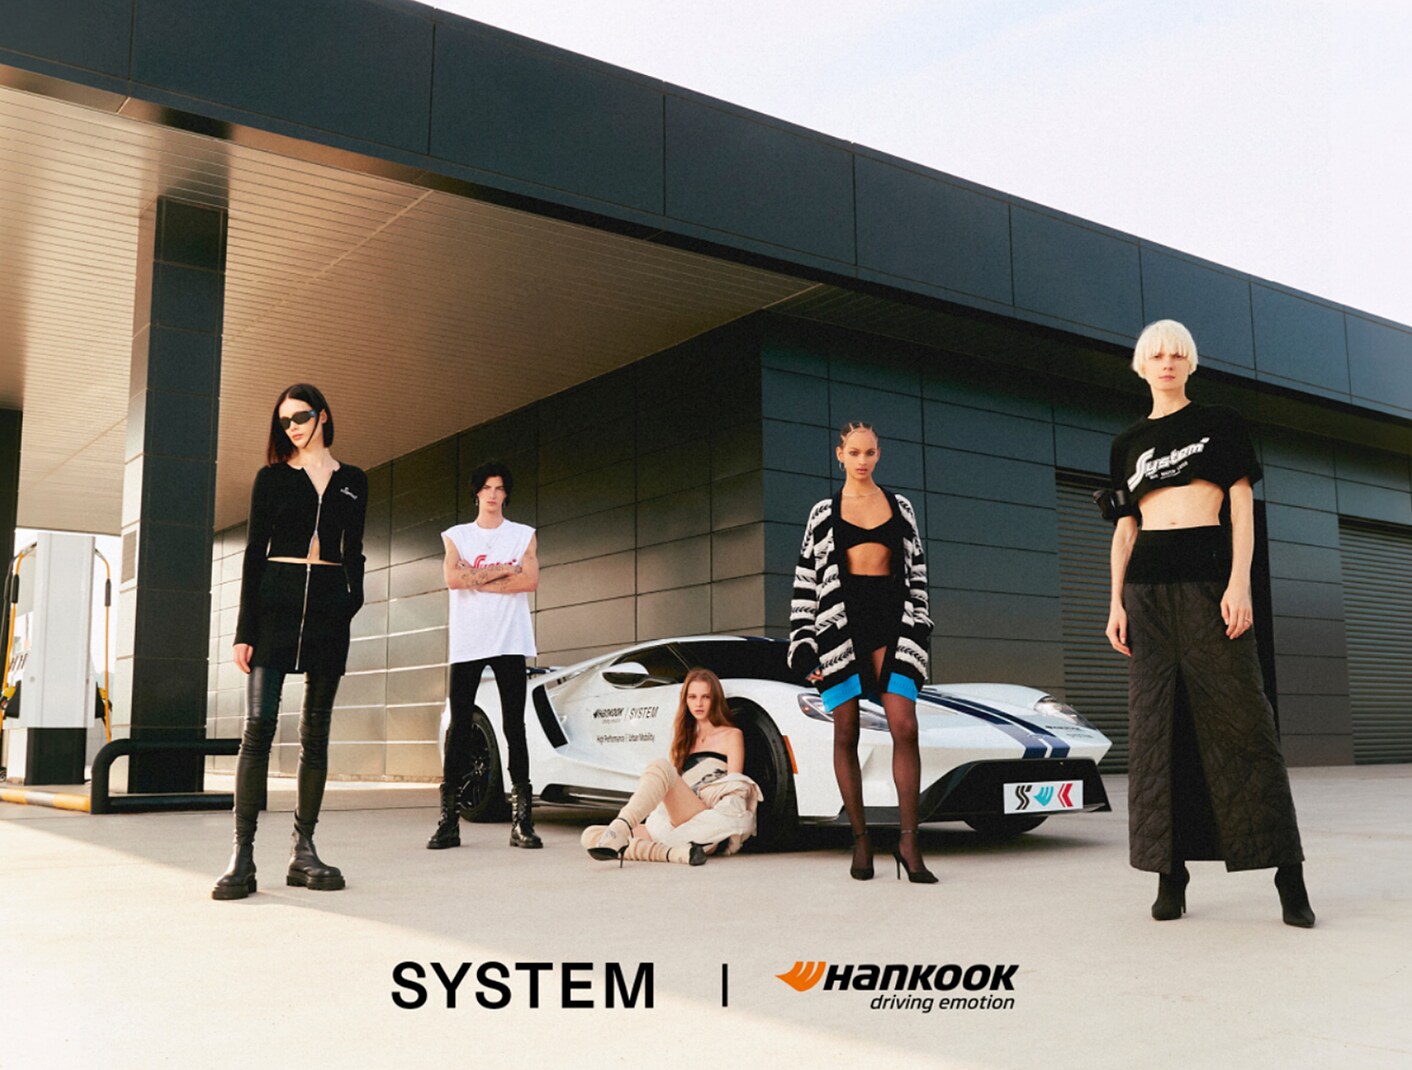 韩泰轮胎与时尚品牌SYSTEM合作推出服装系列